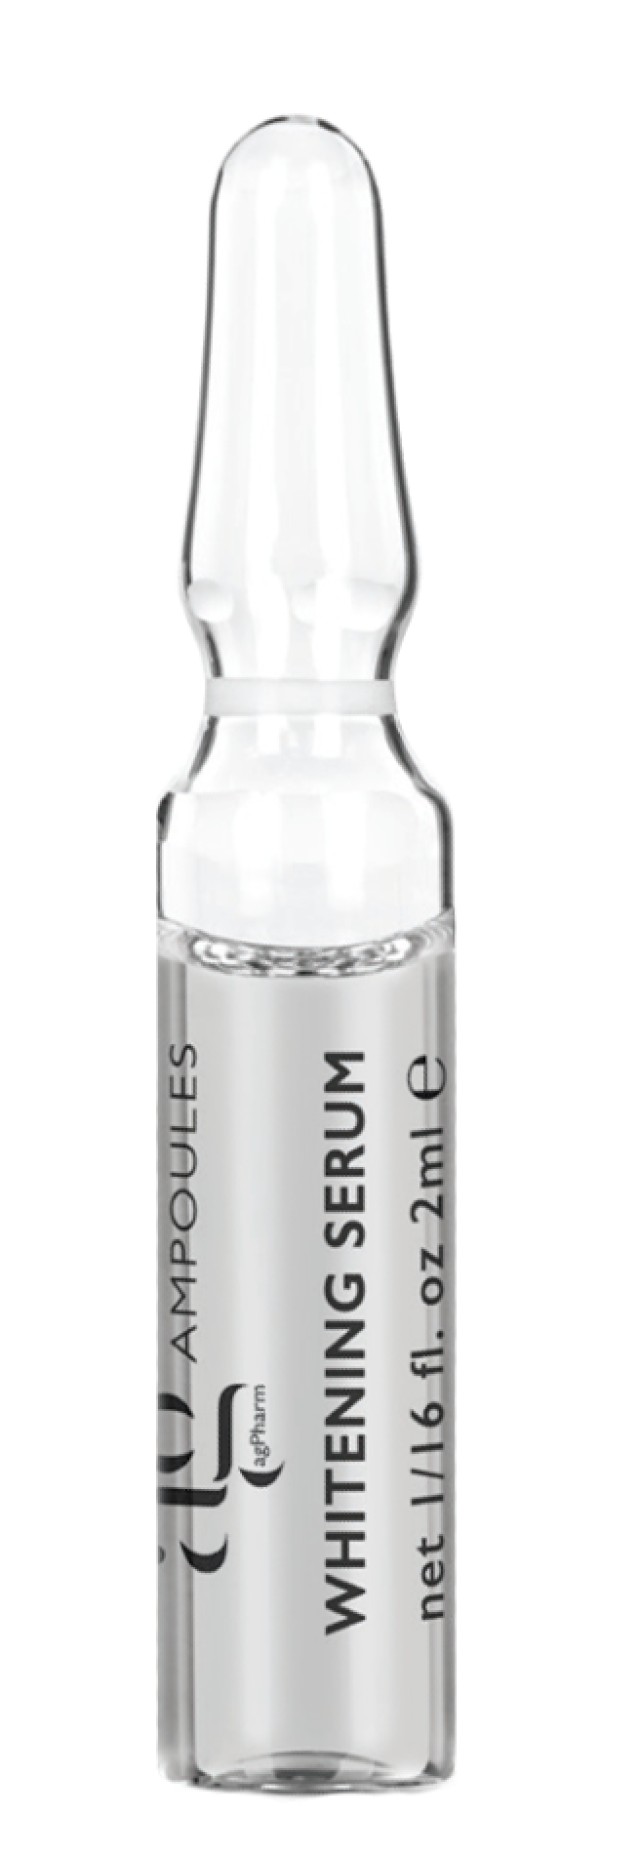 AG Pharm Whitening Serum Ορός Λεύκανσης Προσώπου 1 Αμπούλα x 2ml